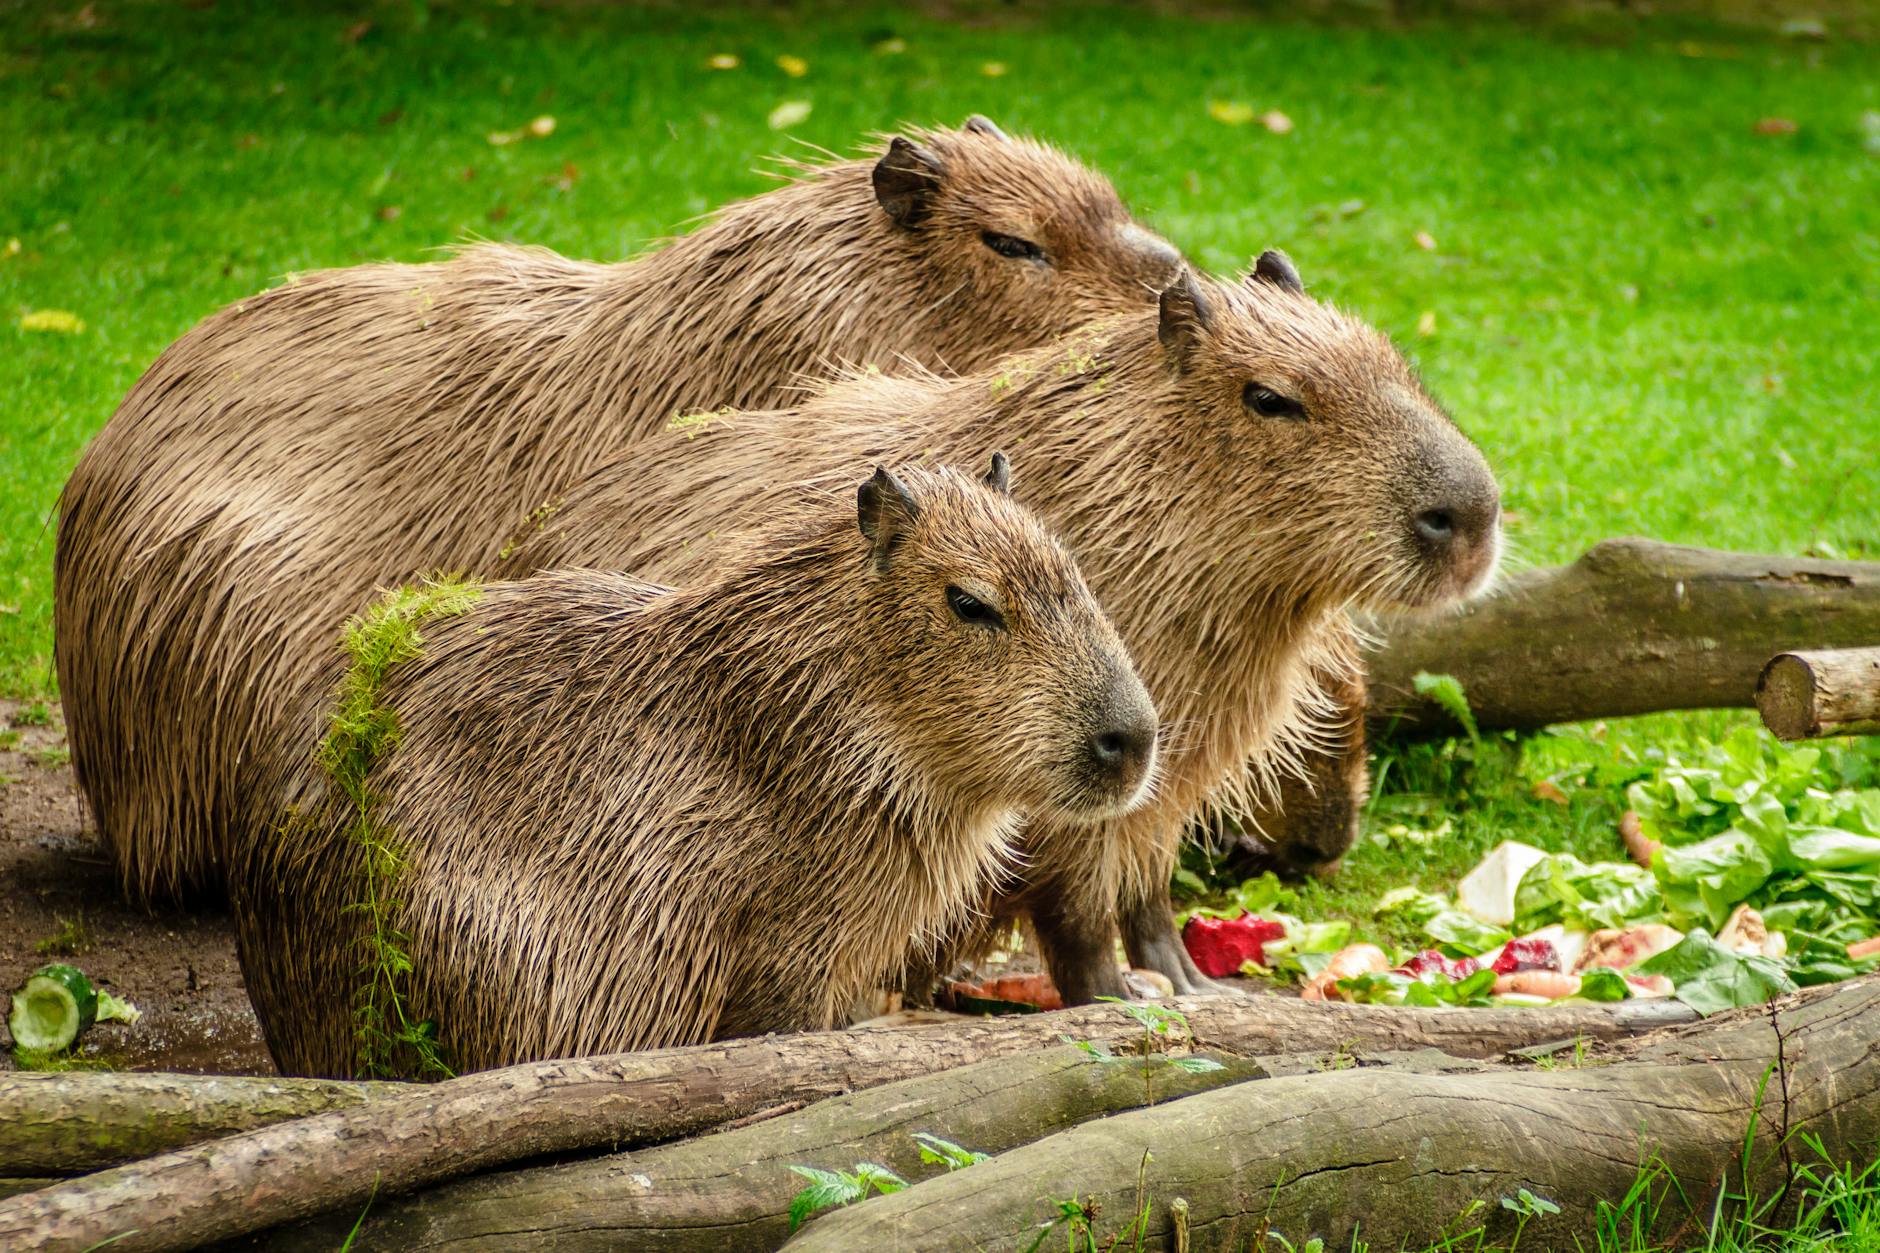 Meet the Capybara